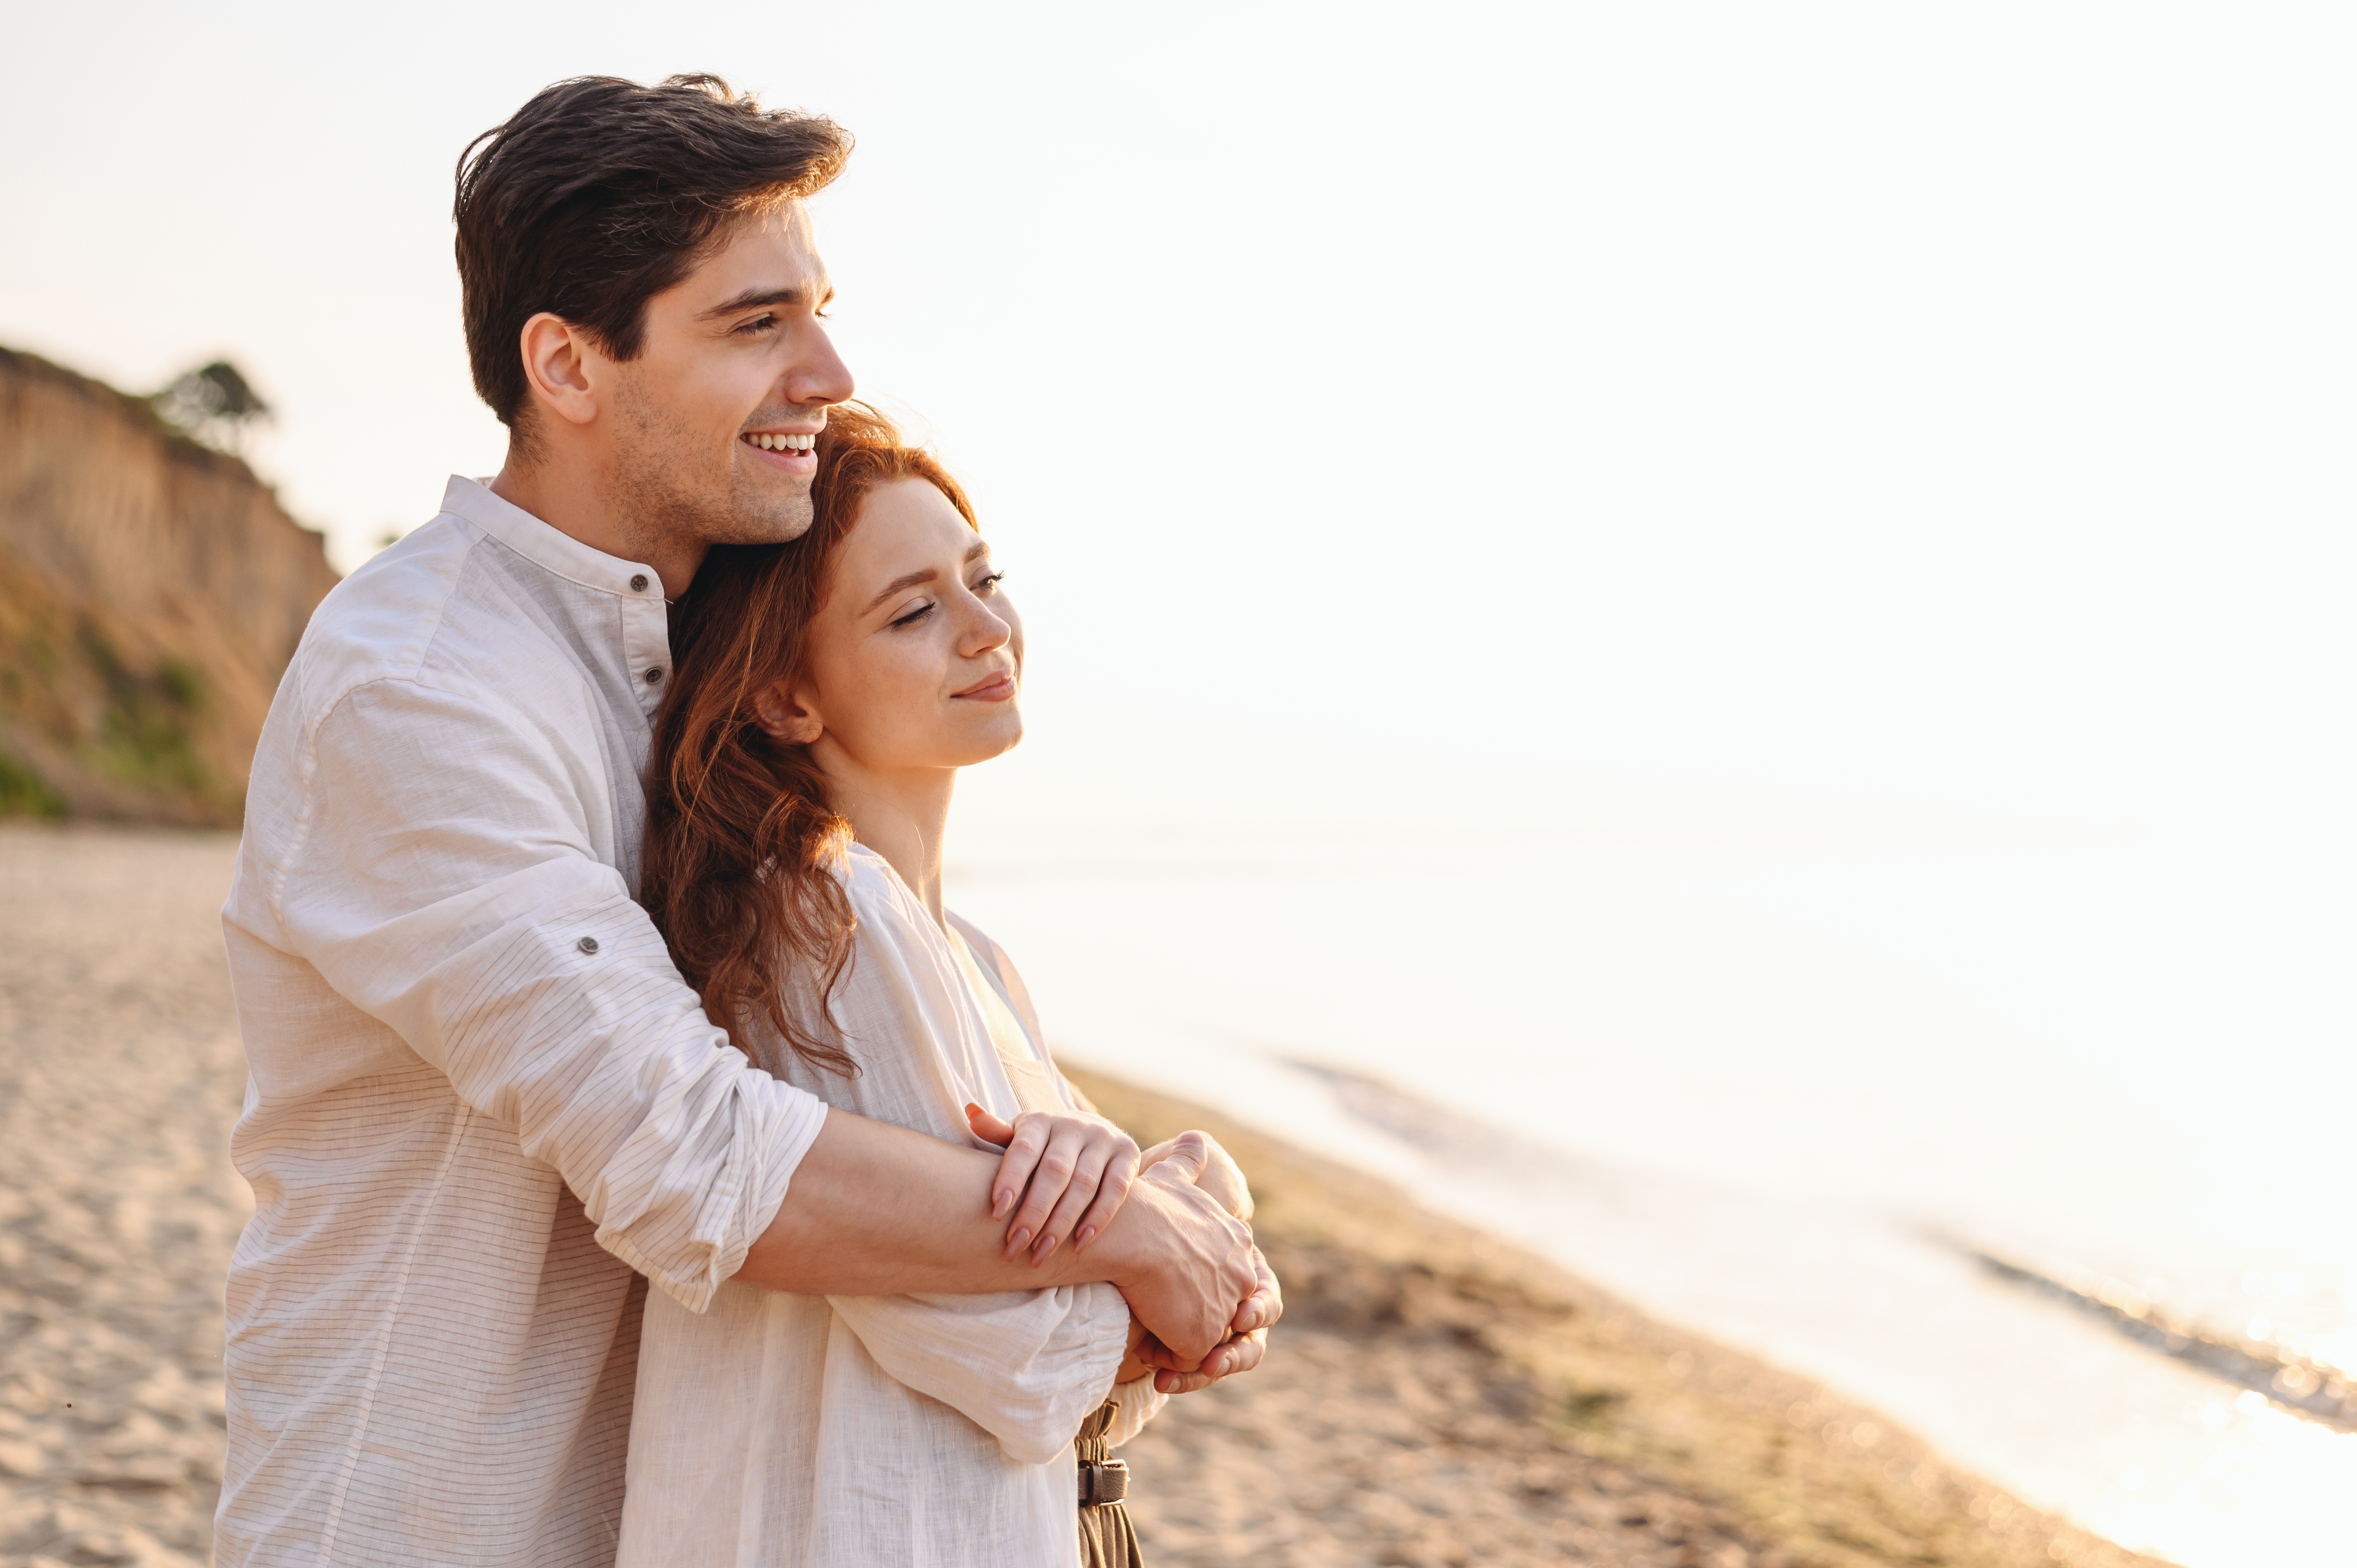 Ein glückliches Paar steht am Strand | Quelle: Shutterstock